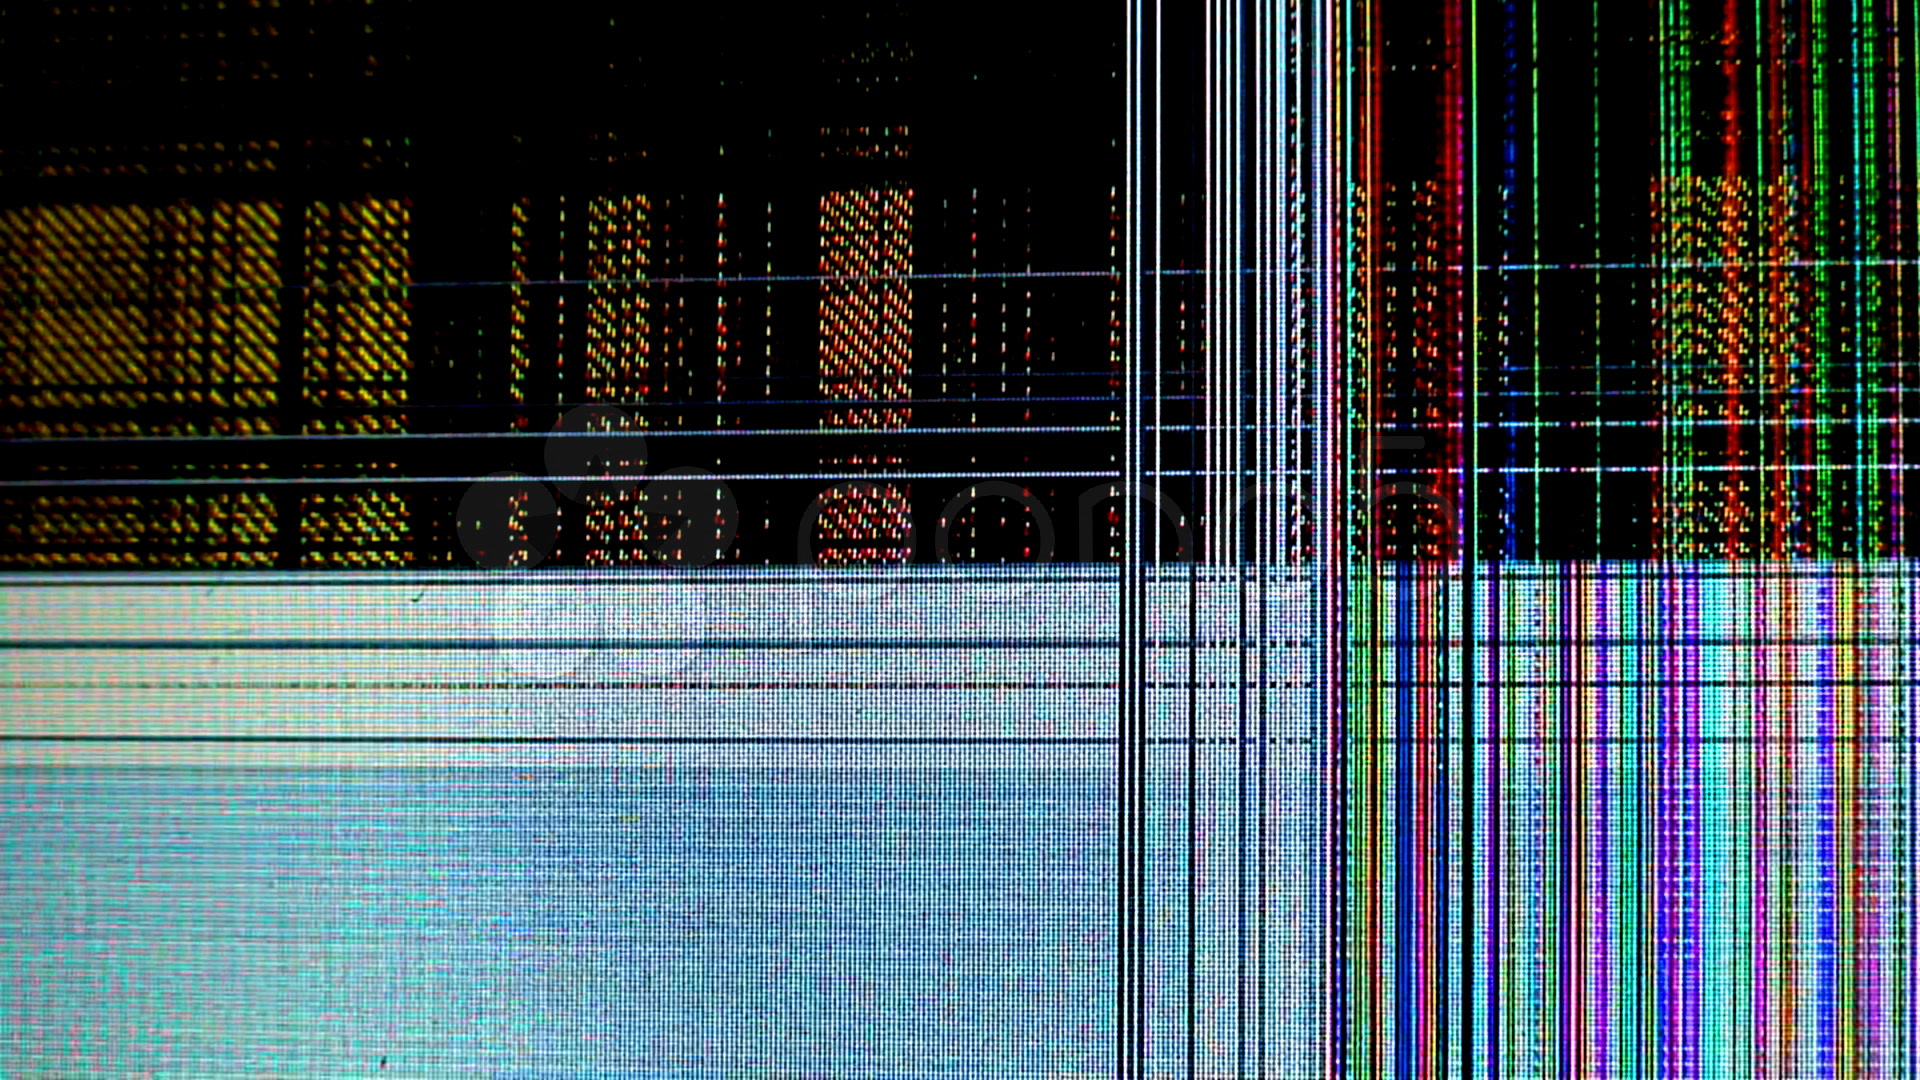 HD Broken Screen Wallpaper - WallpaperSafari